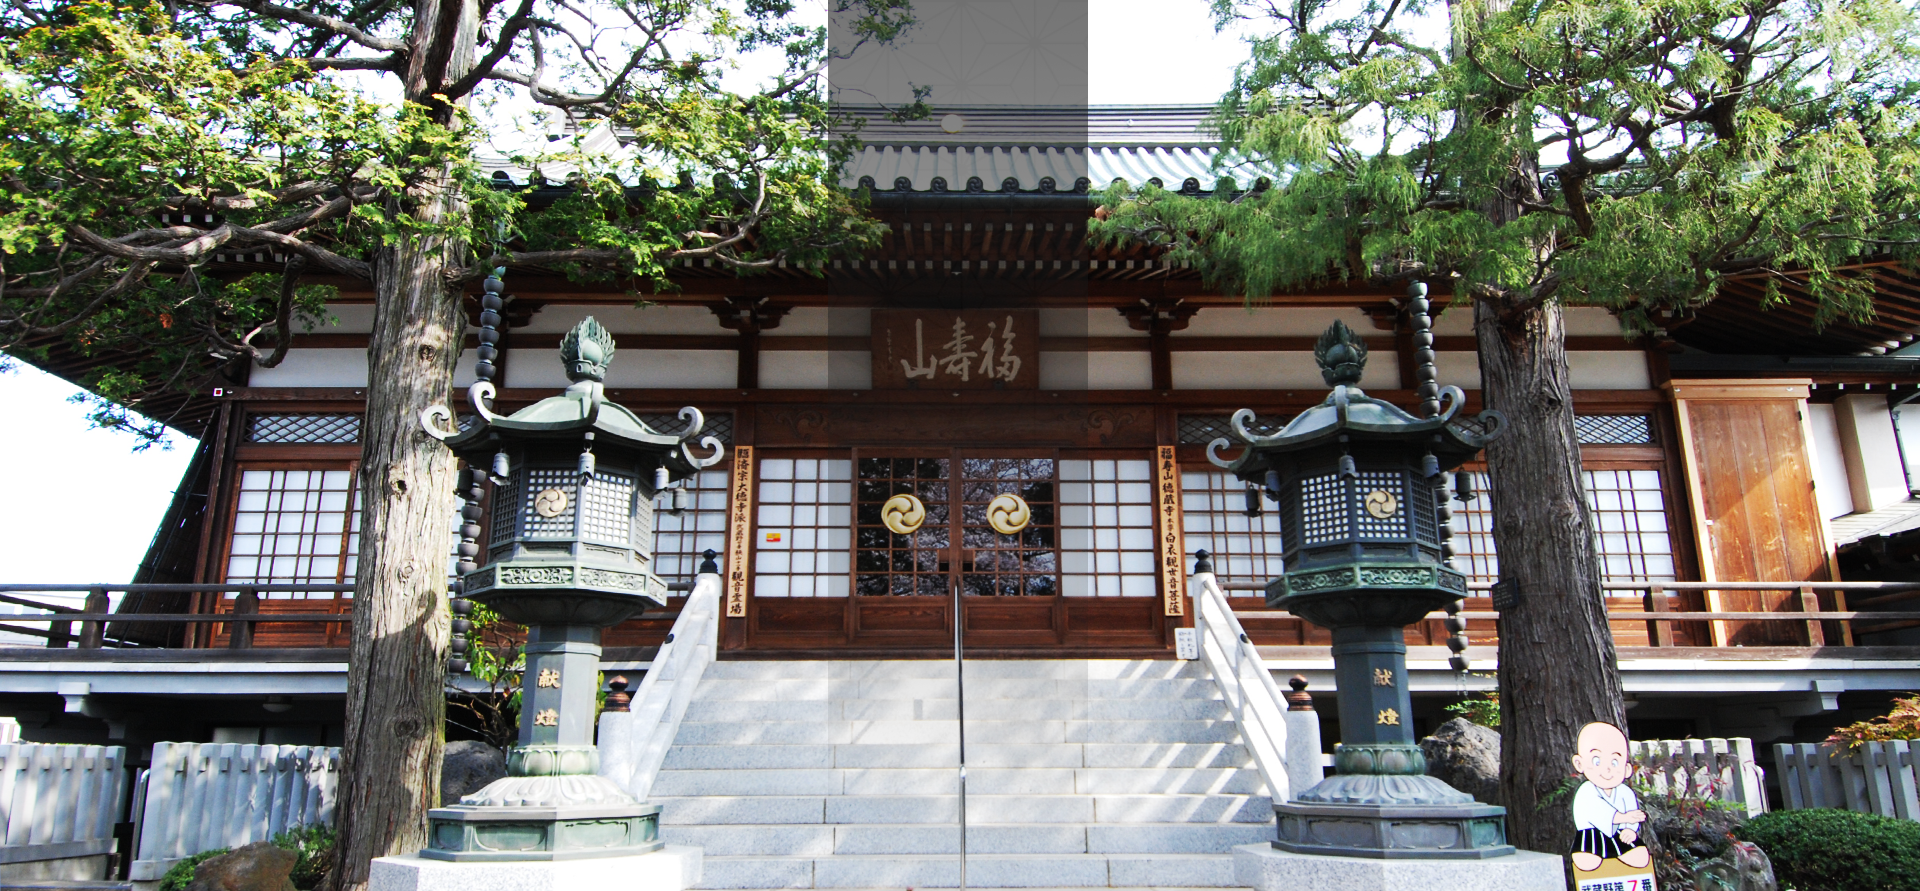 東京都東村山市にある徳蔵寺は重要文化財に囲まれた臨済宗のお寺です。